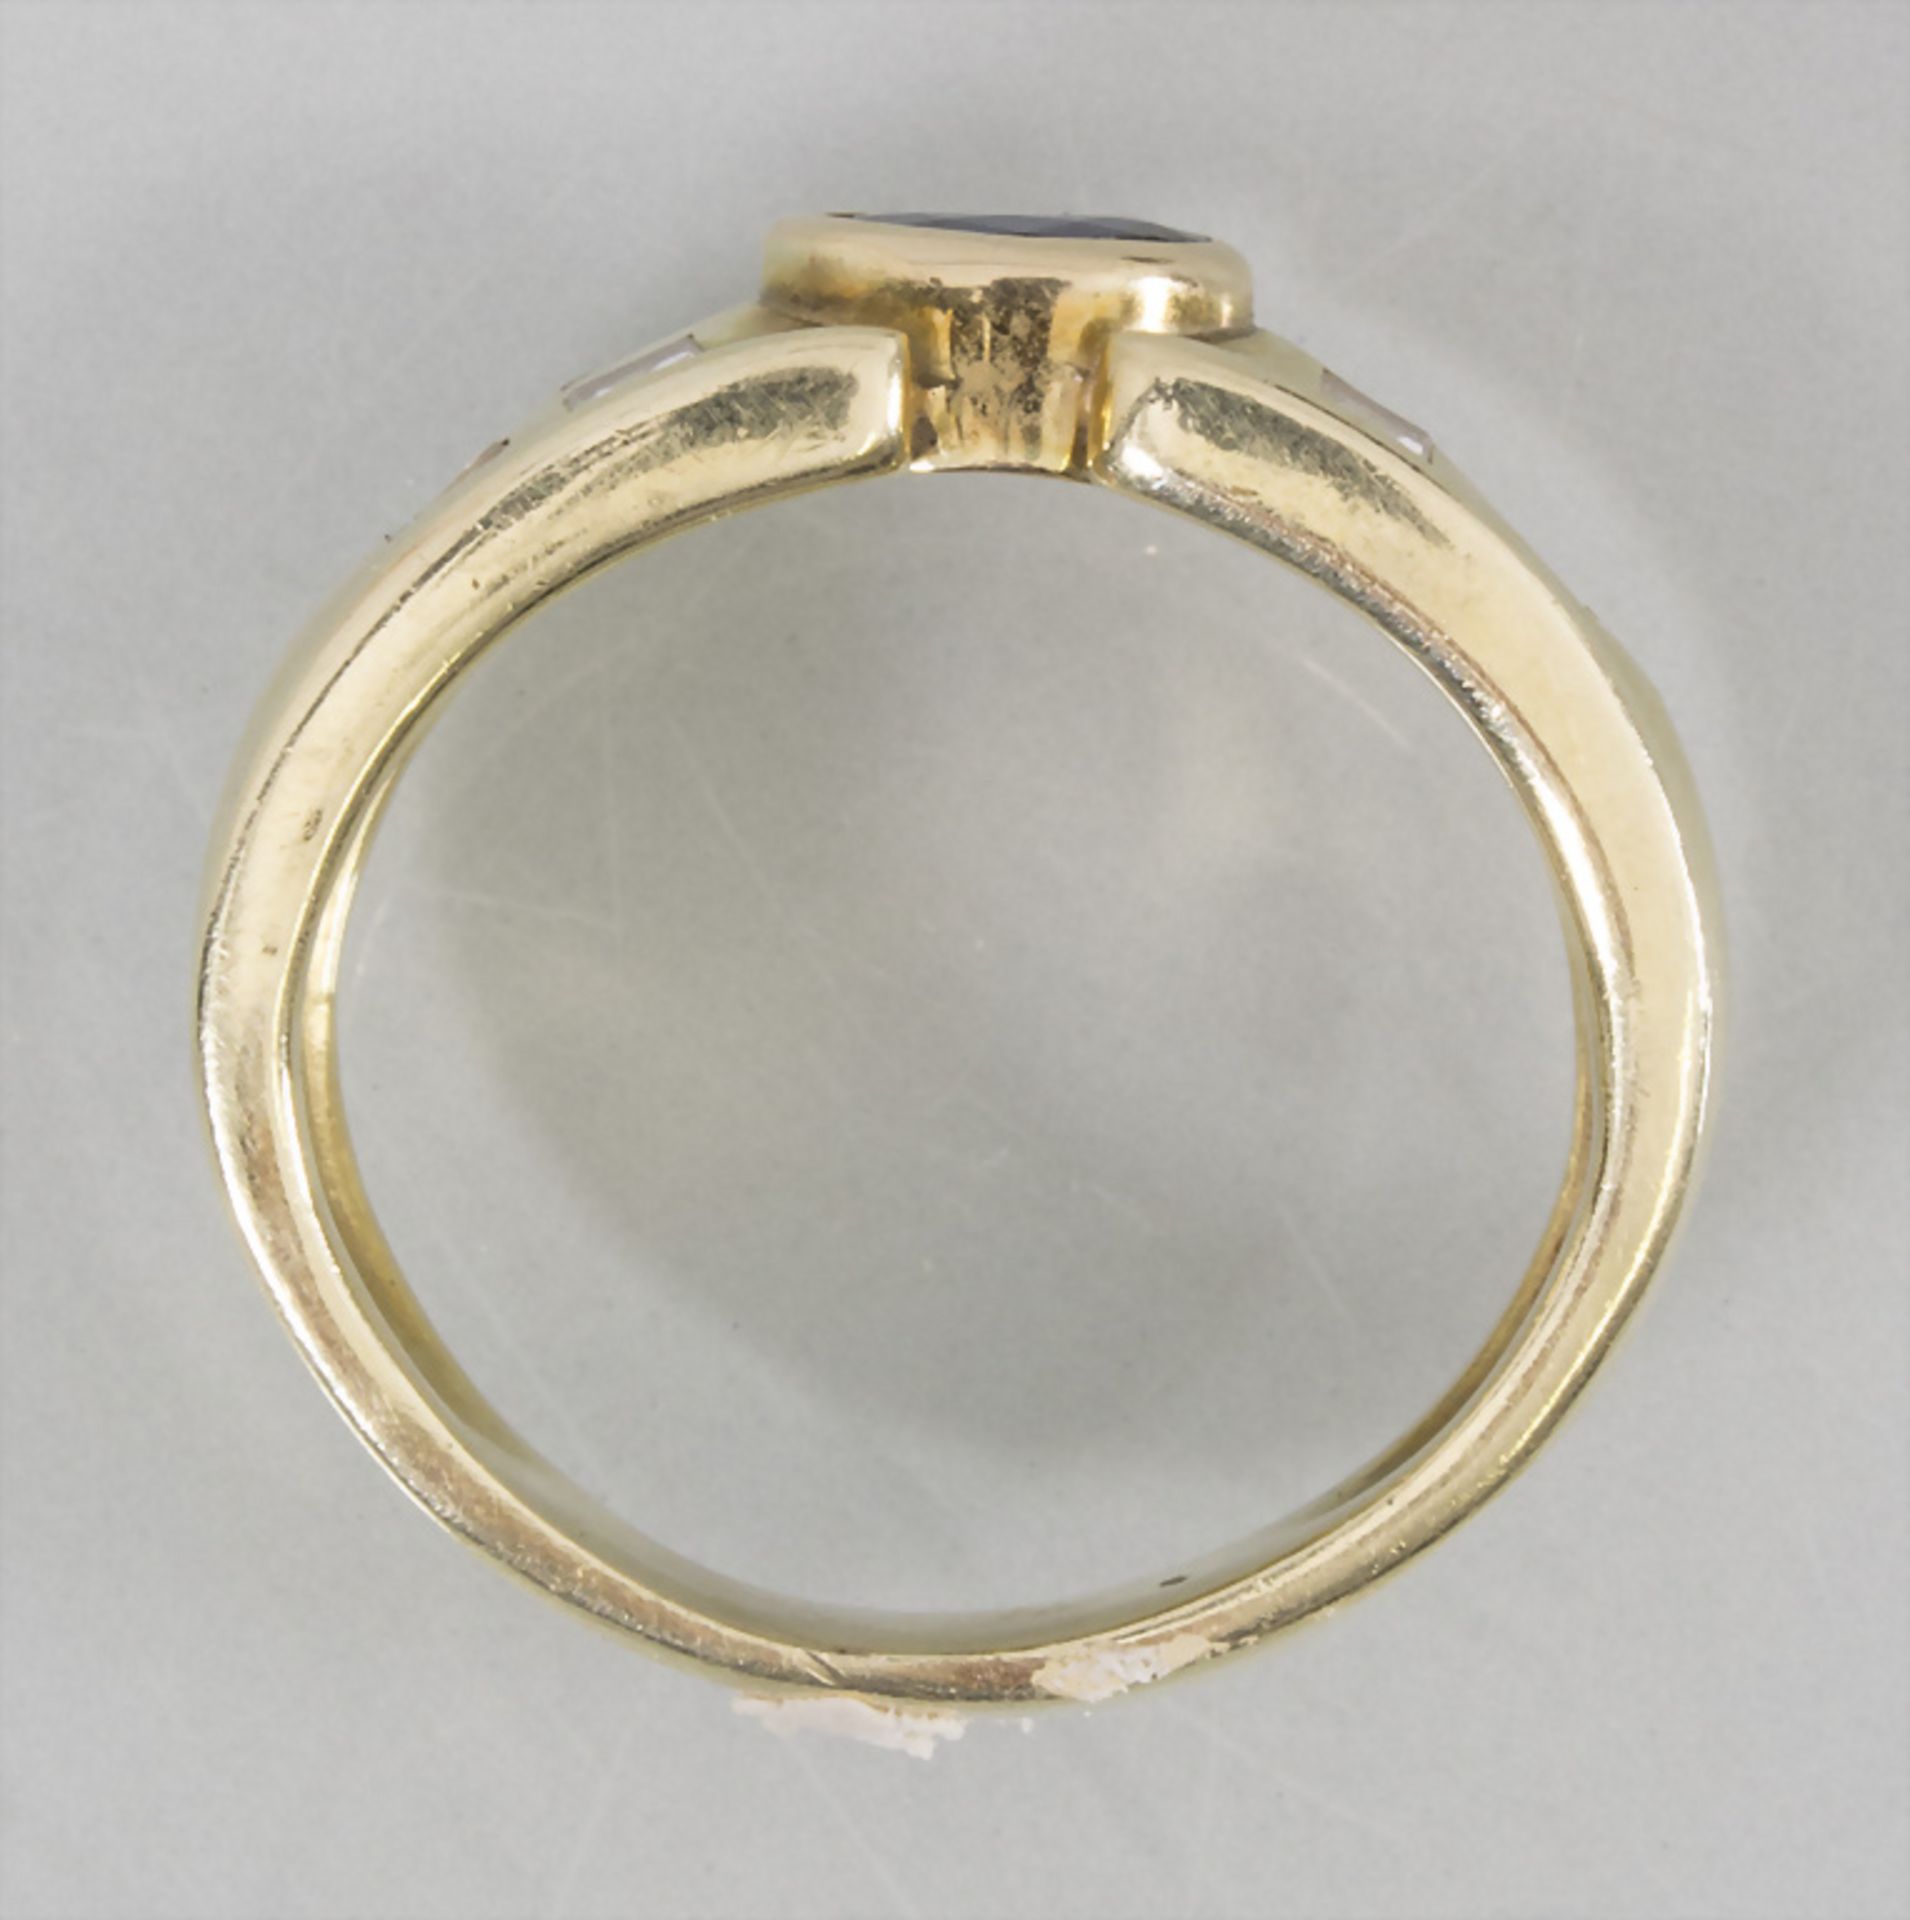 Damenring mit Saphir und Diamanten / A ladies 14k gold ring with sapphire and diamonds - Bild 3 aus 6